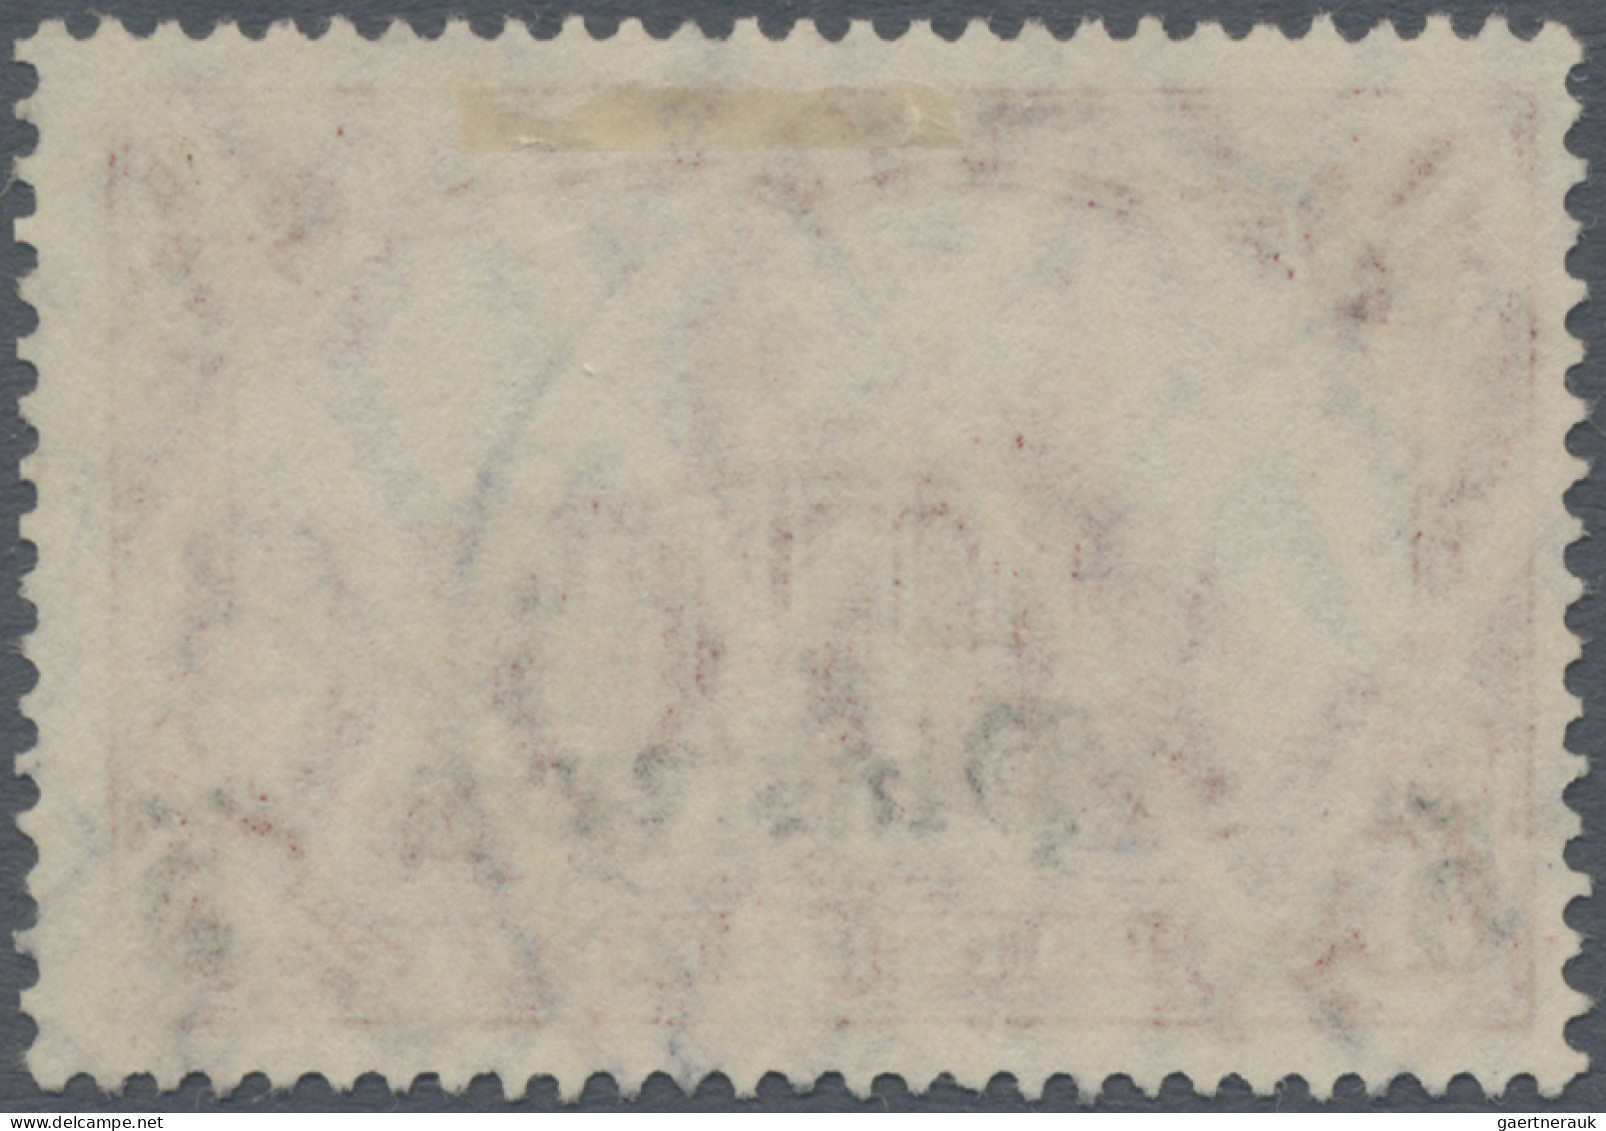 Deutsche Post In Der Türkei: 1907, 5 PIA Auf 1 Mark Dunkelkarminrot Mit Seltenem - Turkey (offices)